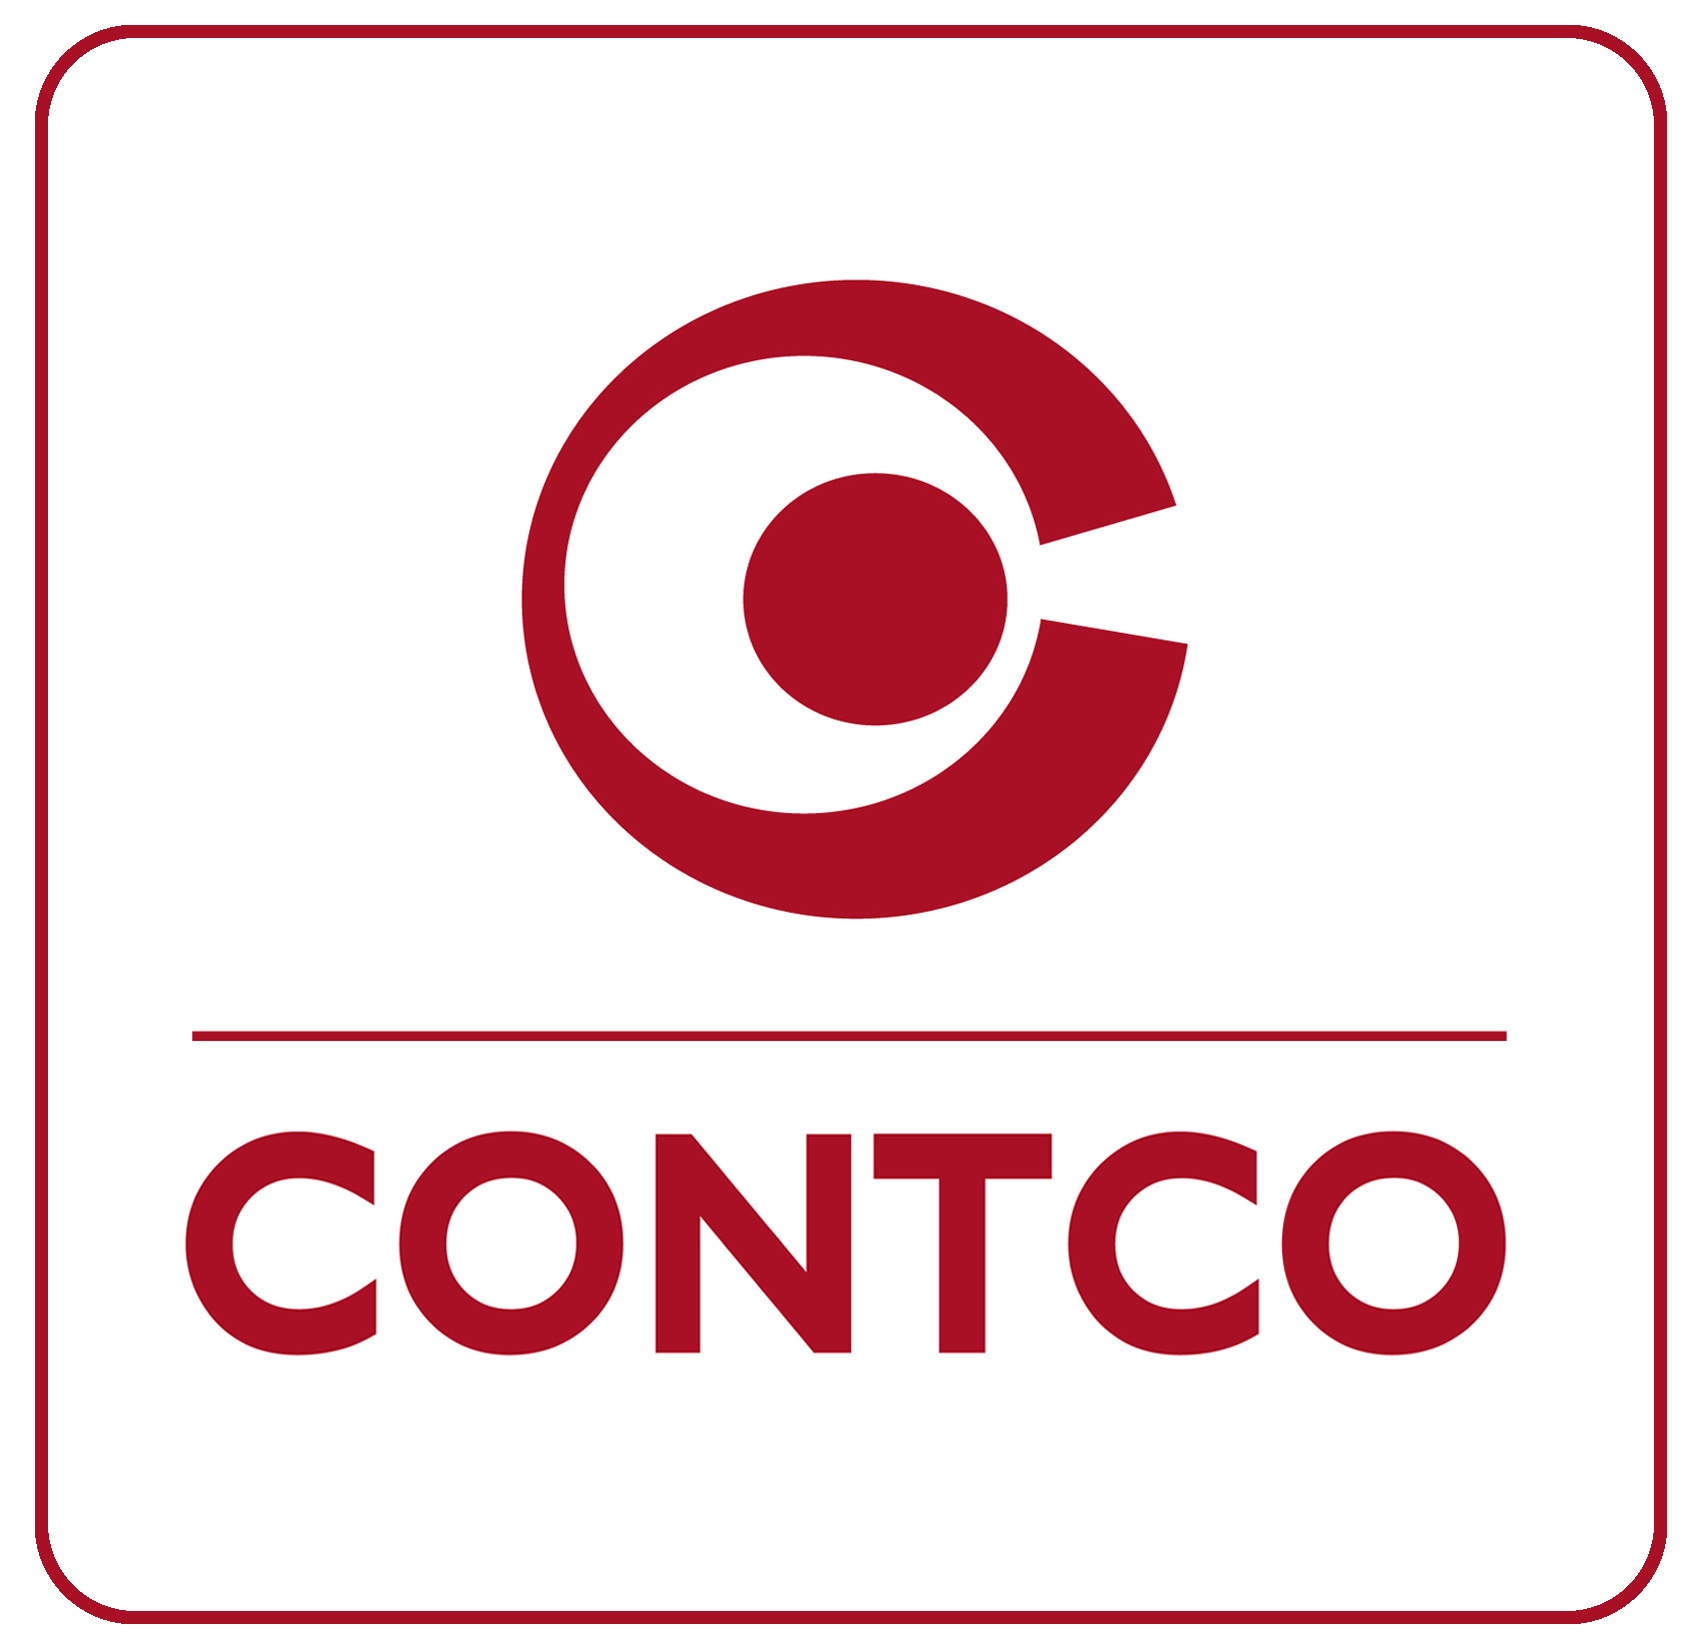 Contco GmbH